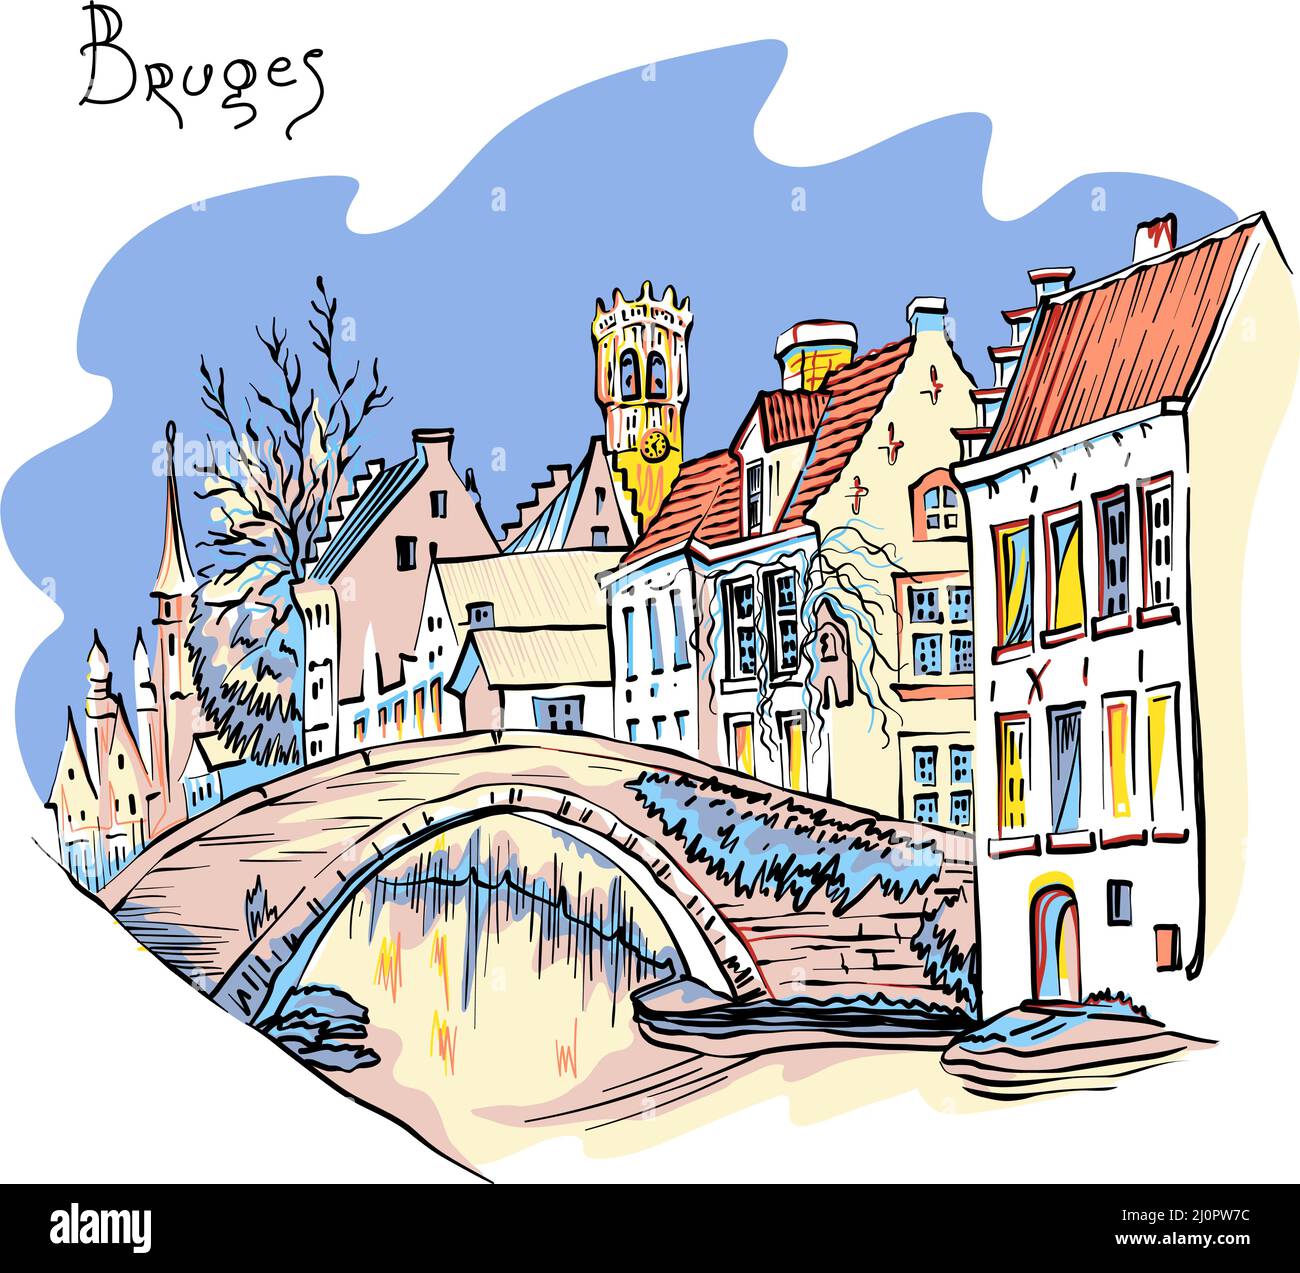 Vector color croquis urbain du canal de Bruges Steenhouwer avec beffroi et belles maisons médiévales, Belgique Illustration de Vecteur